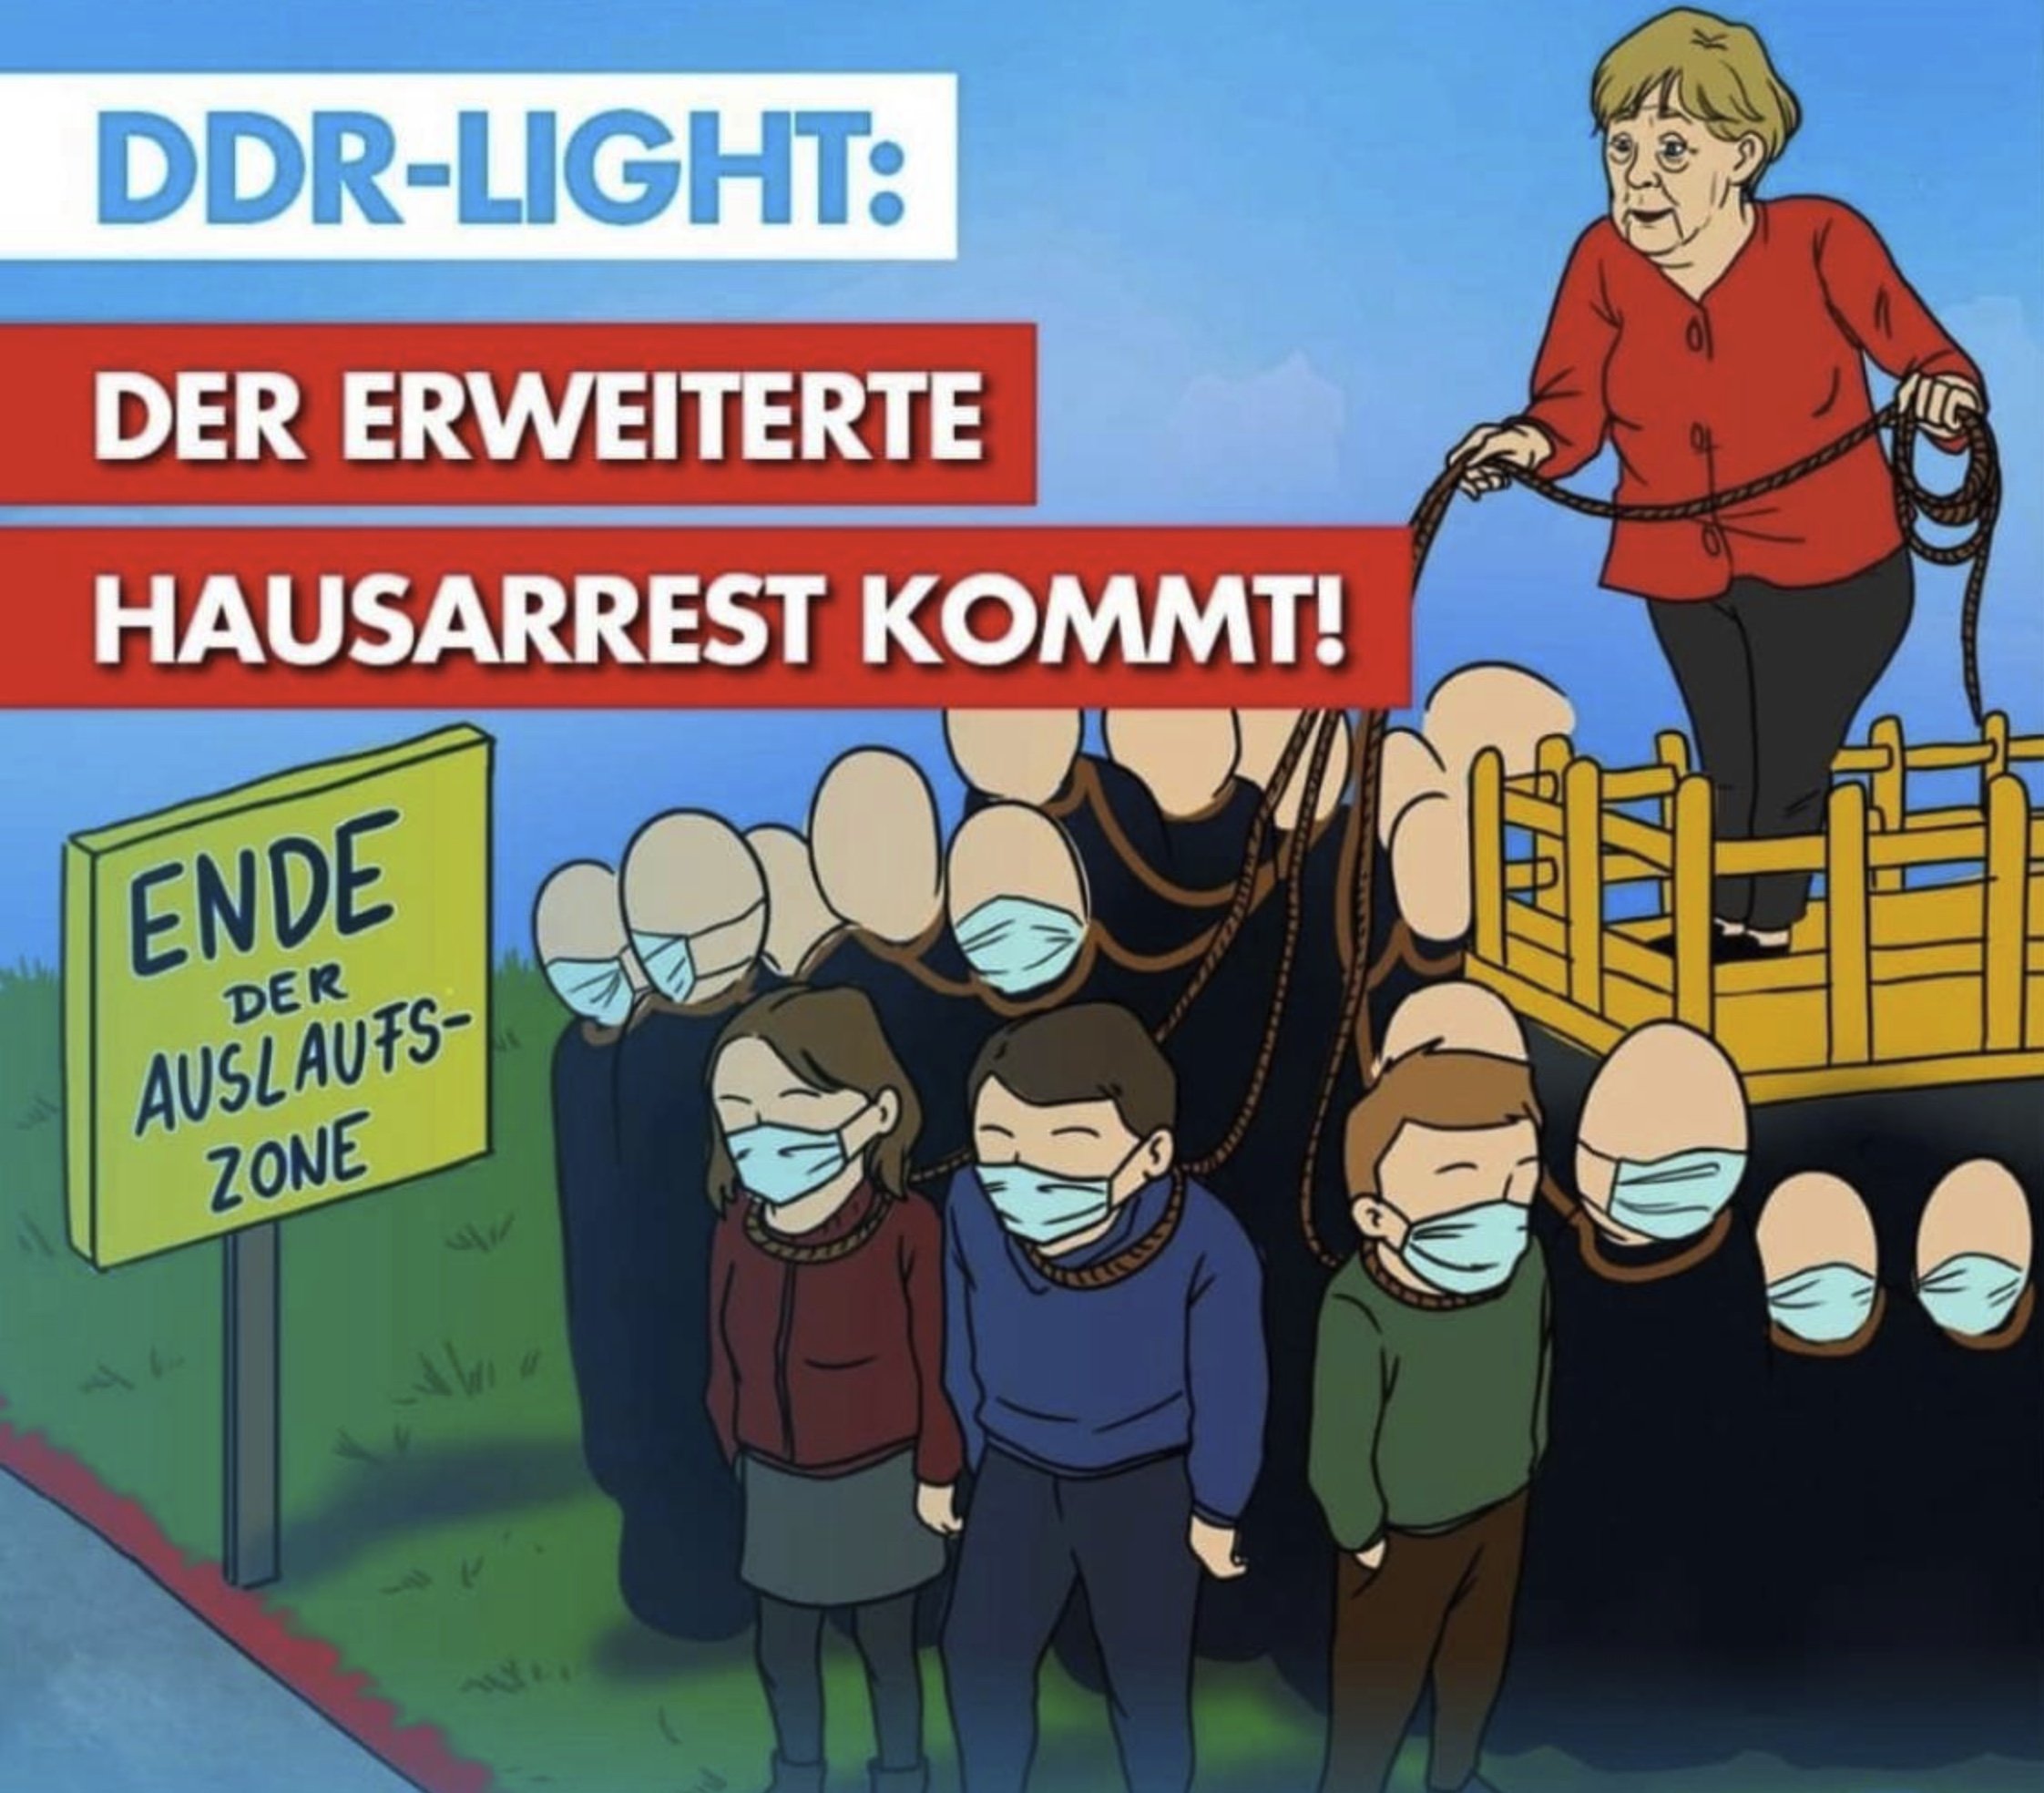 Merkel-DDR-Light